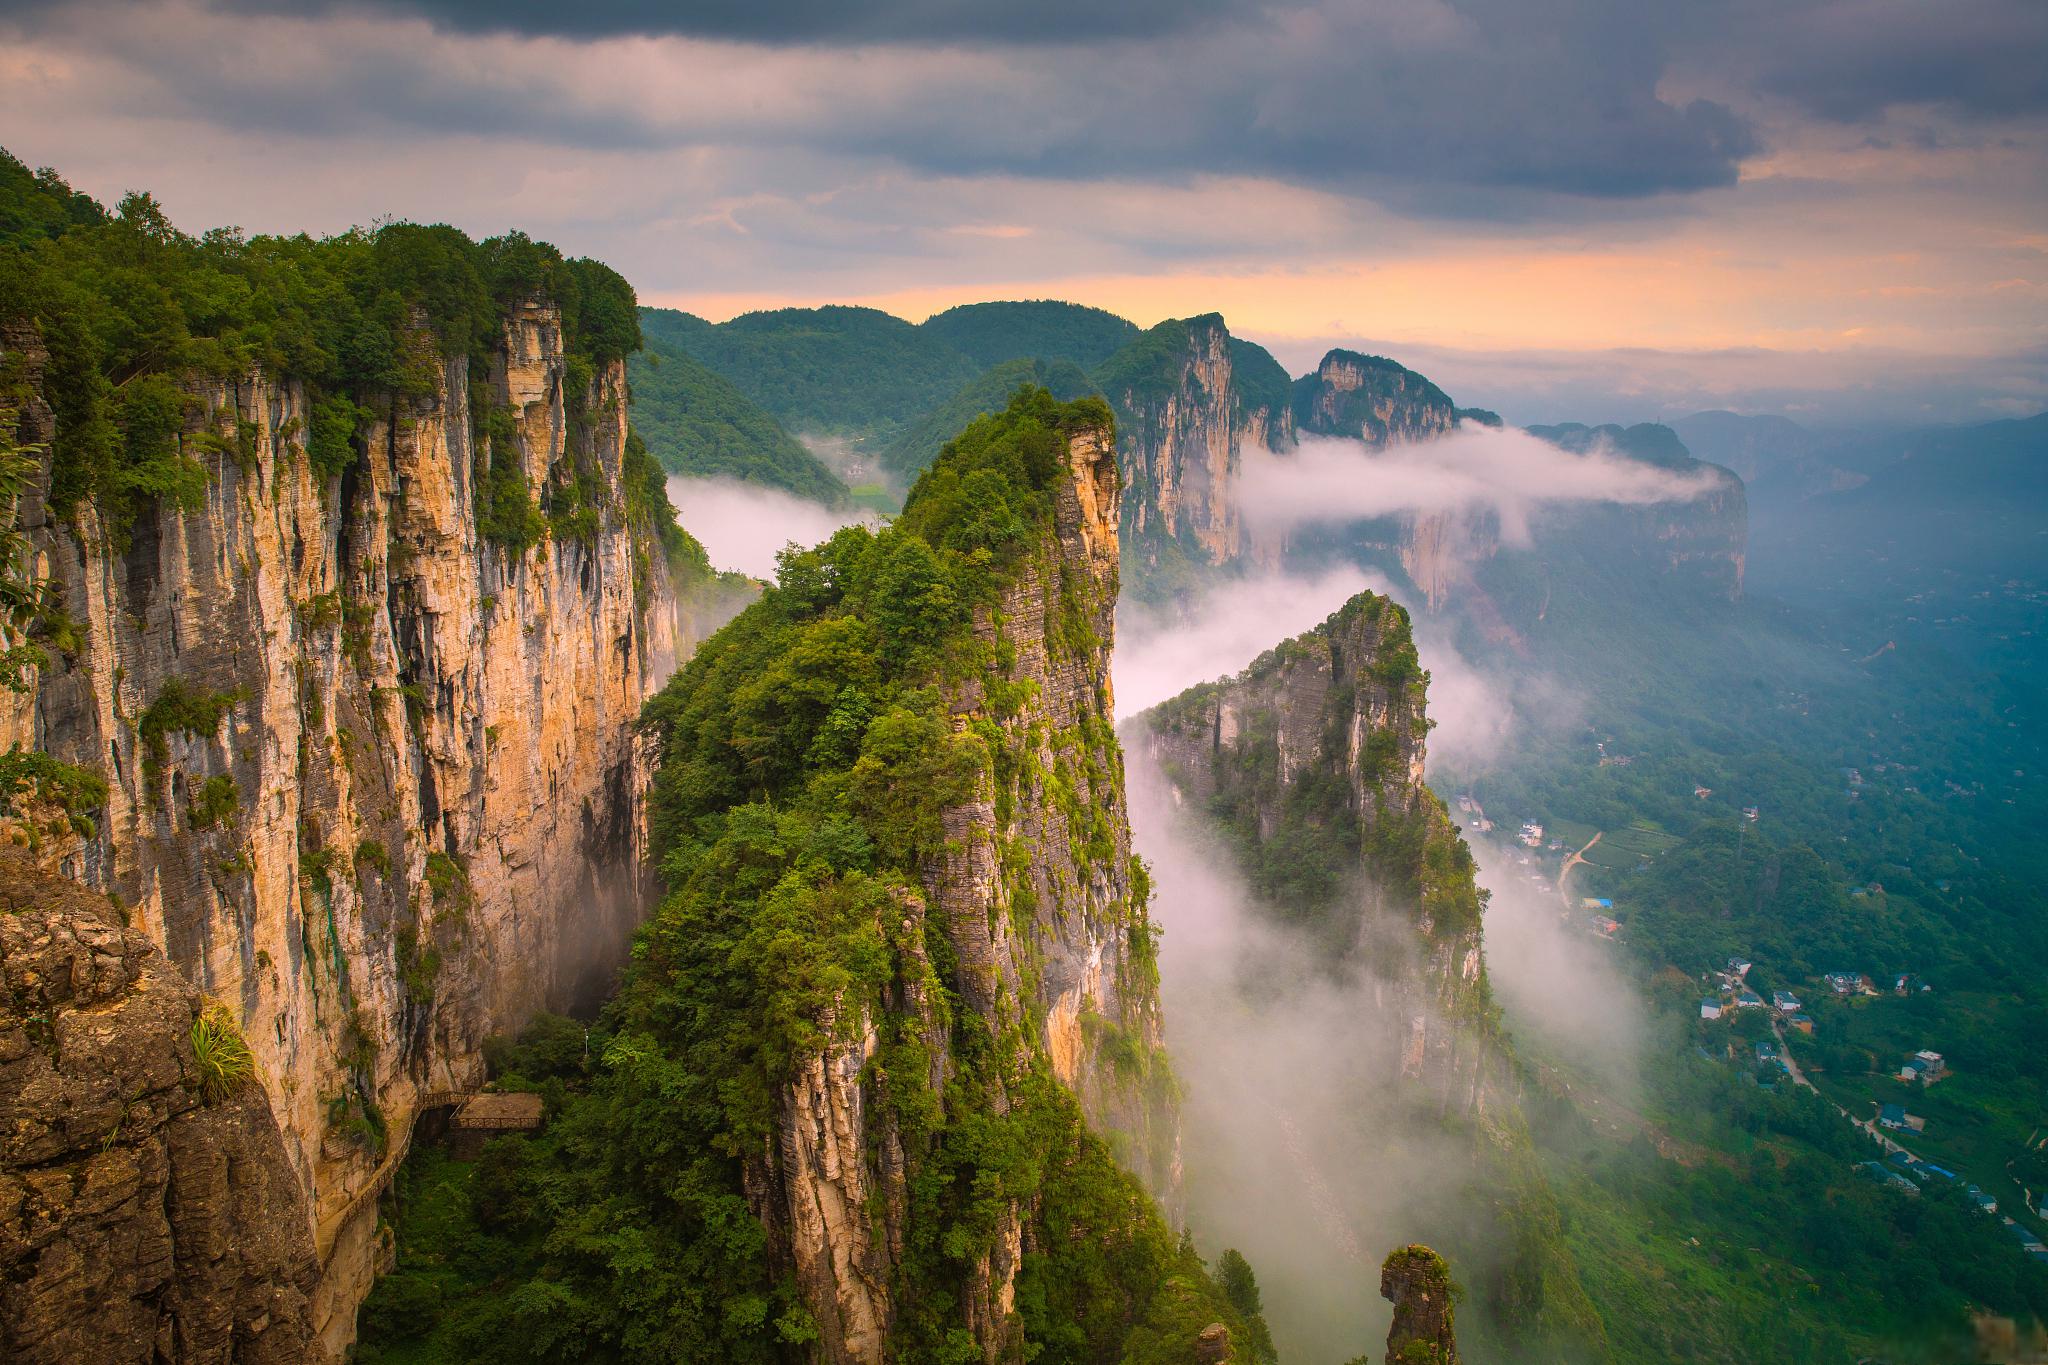 黄鹤峰林景区 黄鹤峰林景区位于湖北省黄冈市,是一个以奇峰怪石为主的